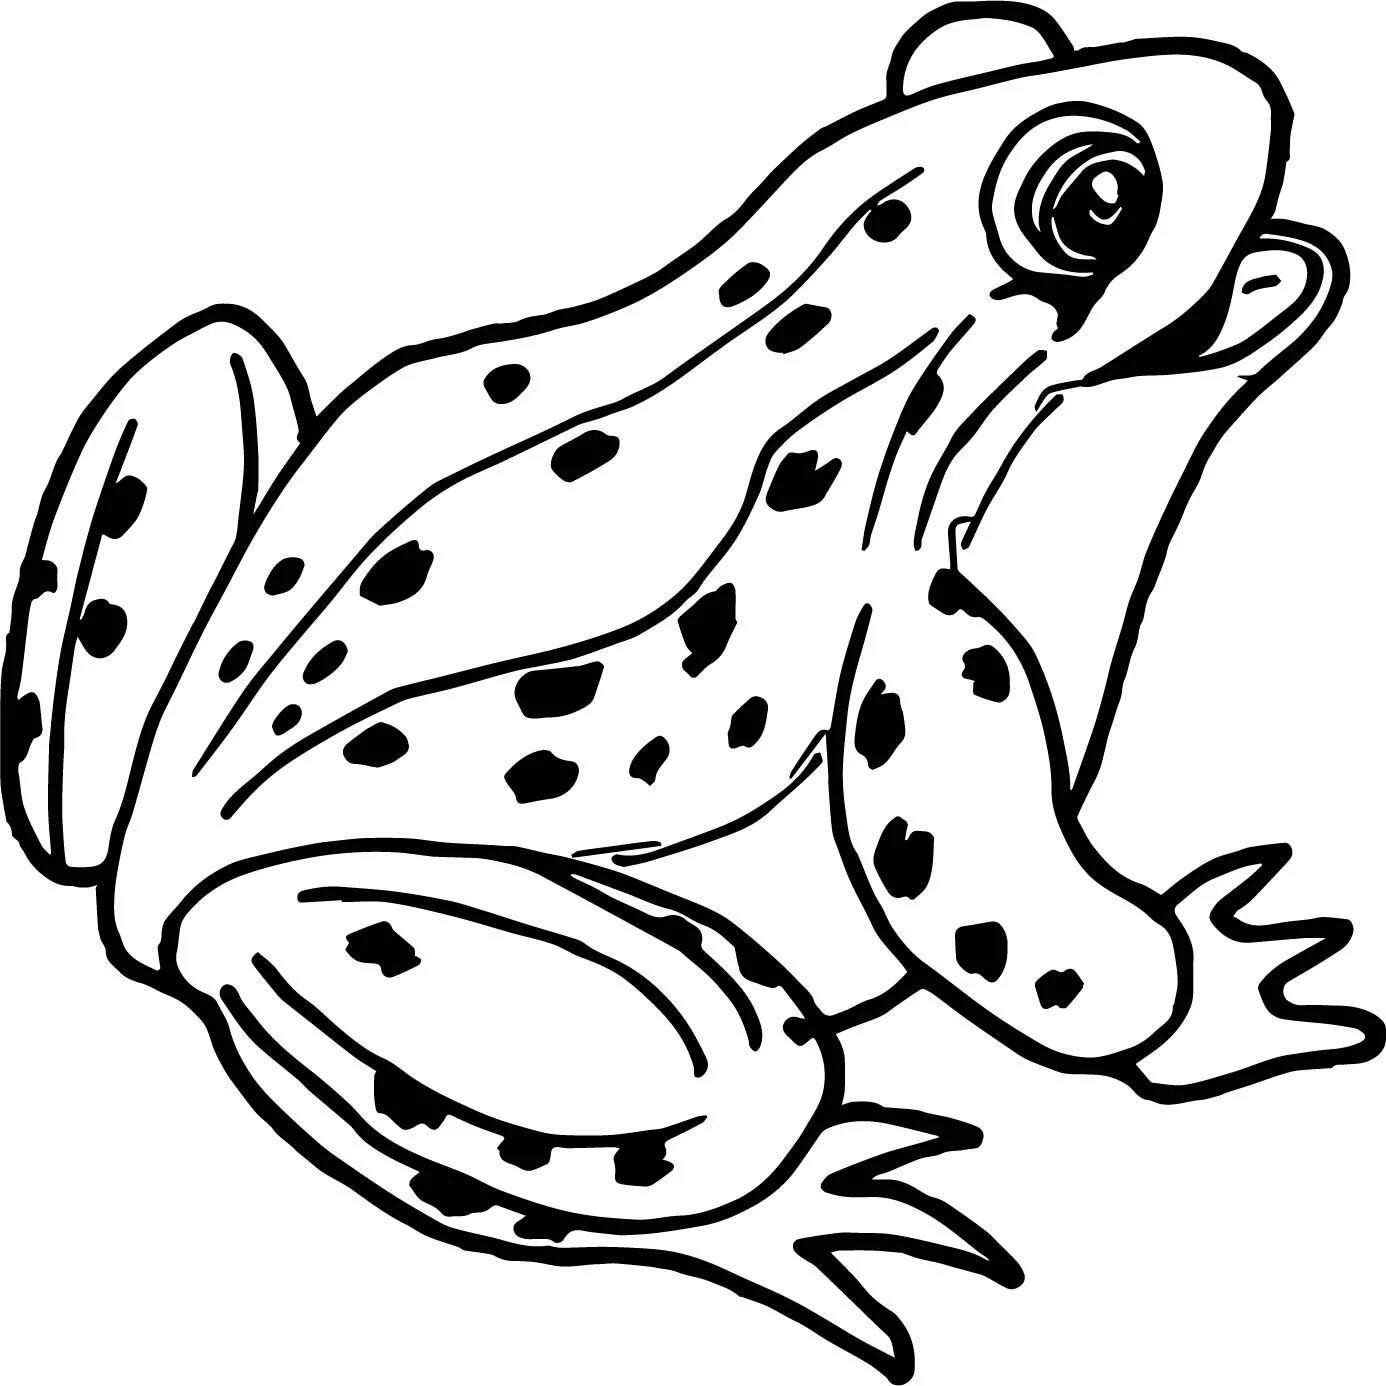 Юмористическая жаба раскраска для детей